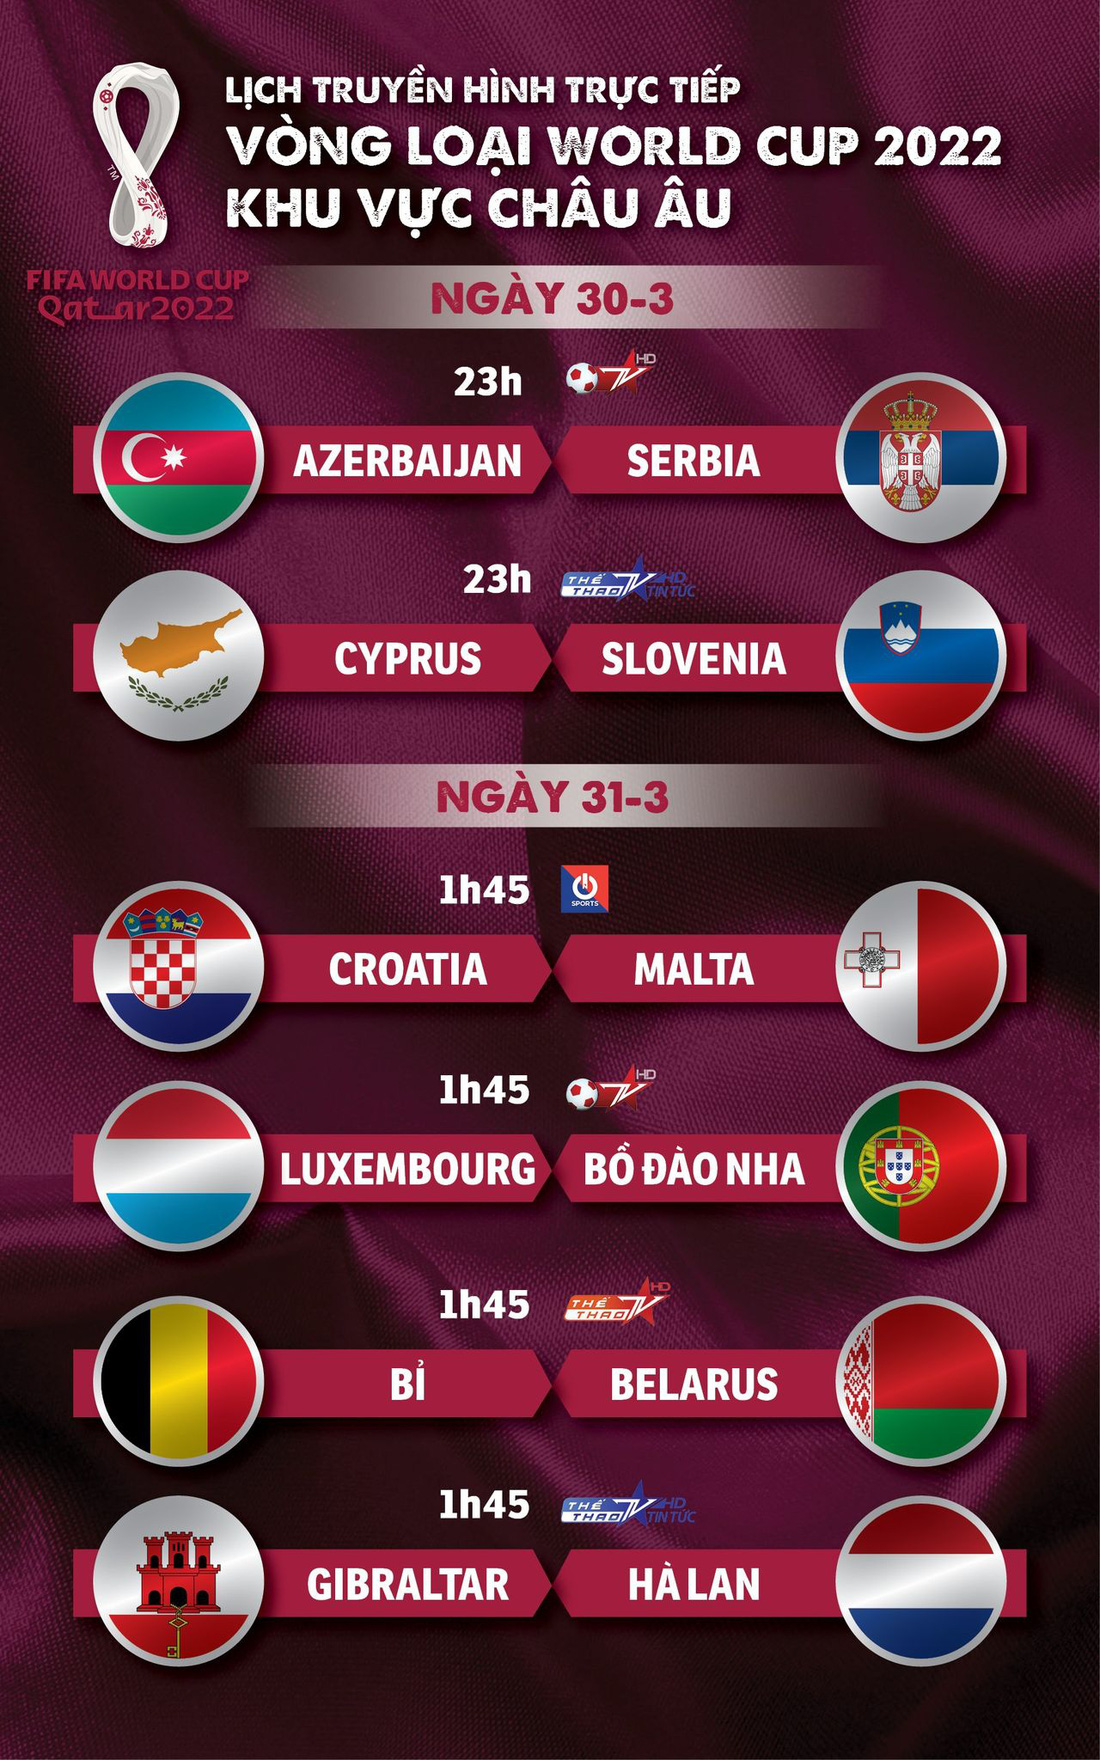 Lịch trực tiếp vòng loại World Cup 2022 châu Âu: Bồ Đào Nha, Bỉ, Hà Lan thi đấu - Ảnh 1.